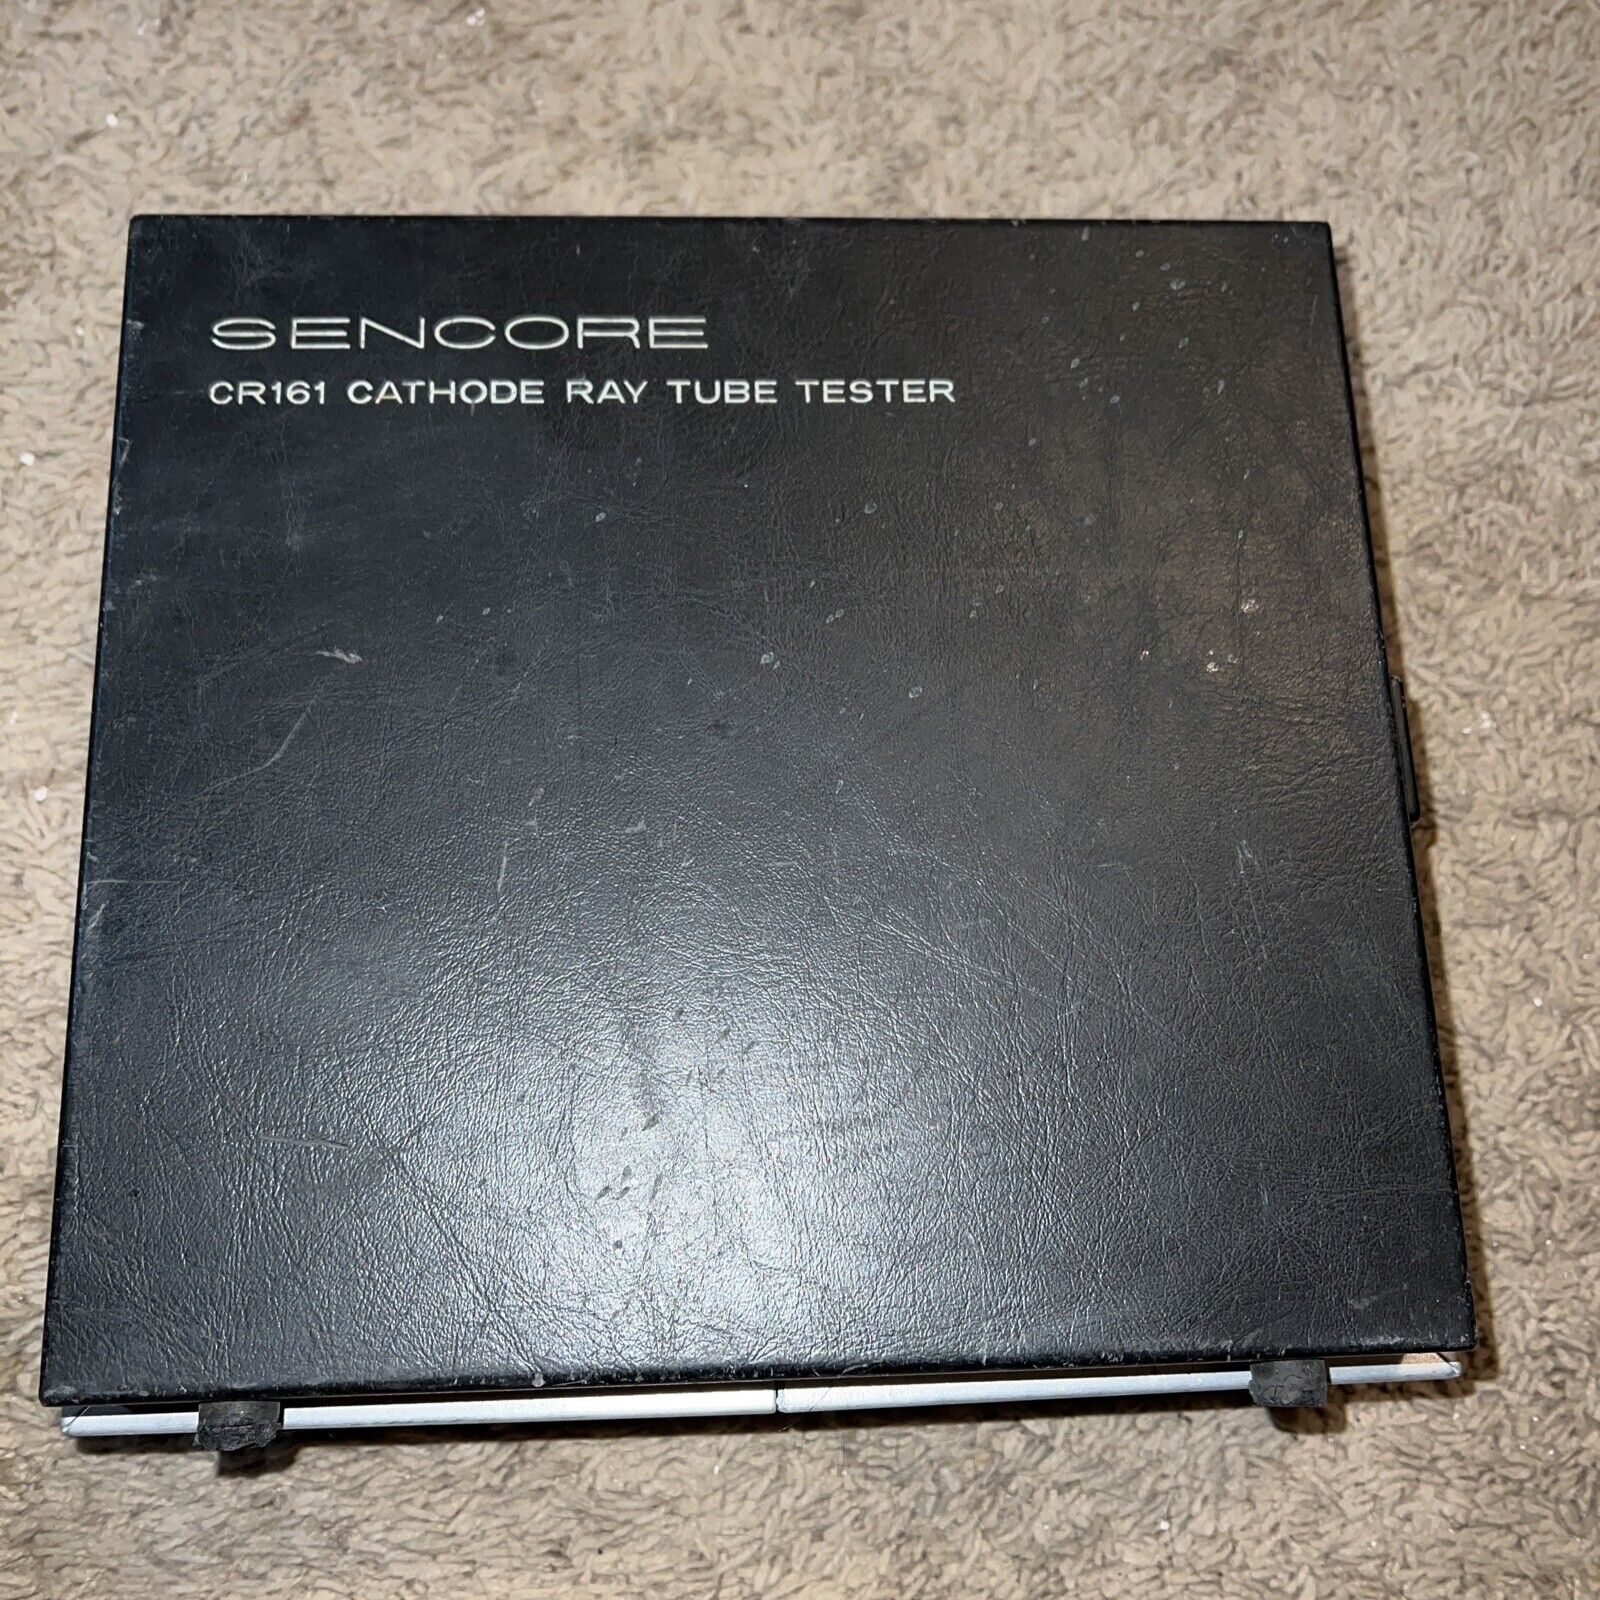 sencore Cathode Ray Tube Tester (CRT), Model CR161